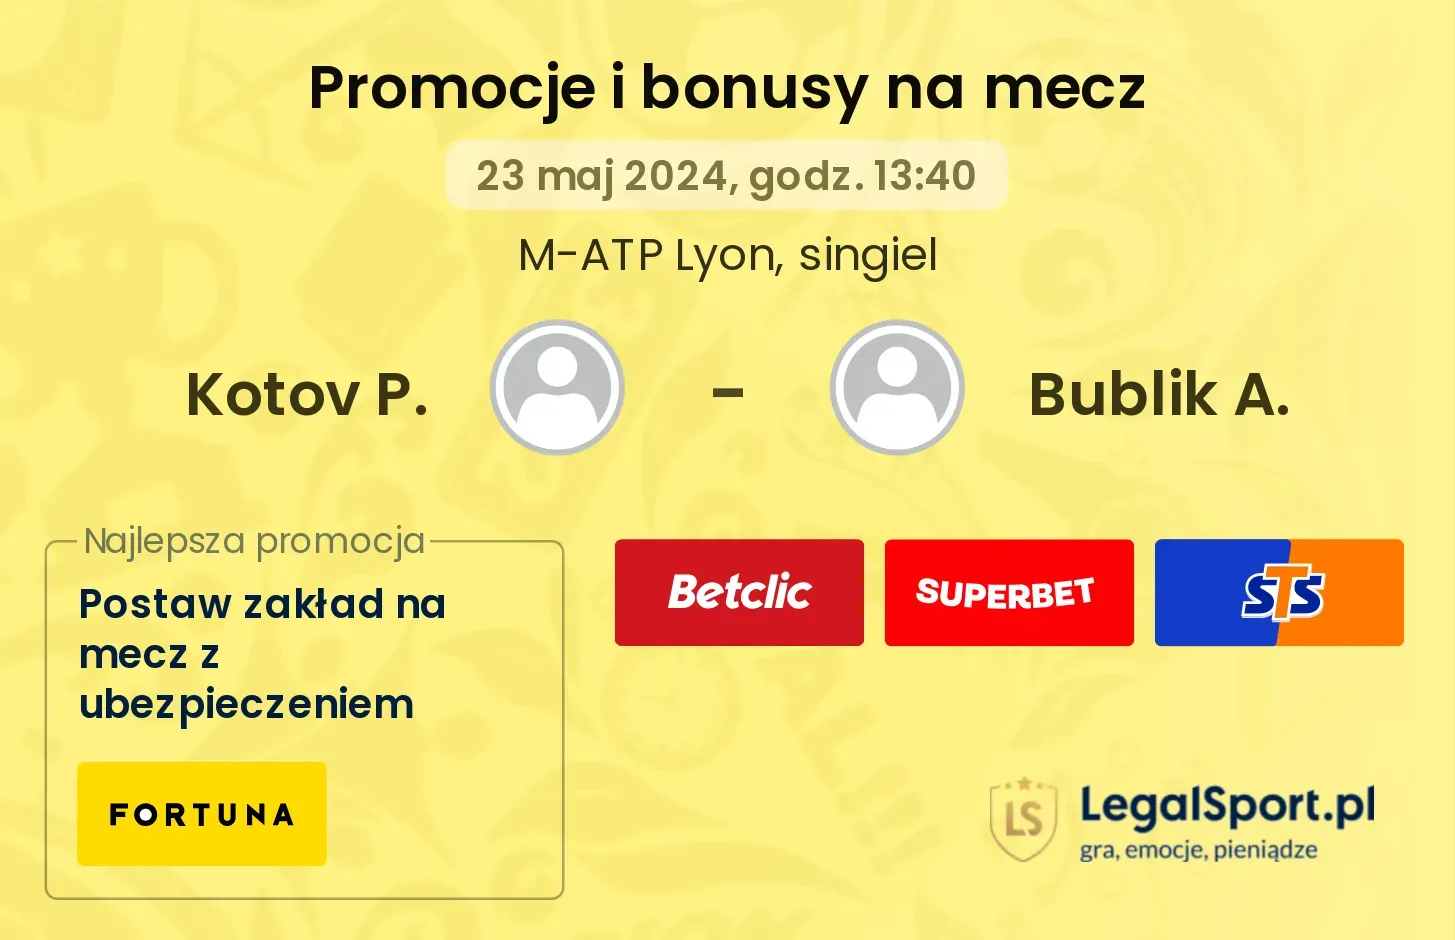 Kotov P. - Bublik A. promocje bonusy na mecz